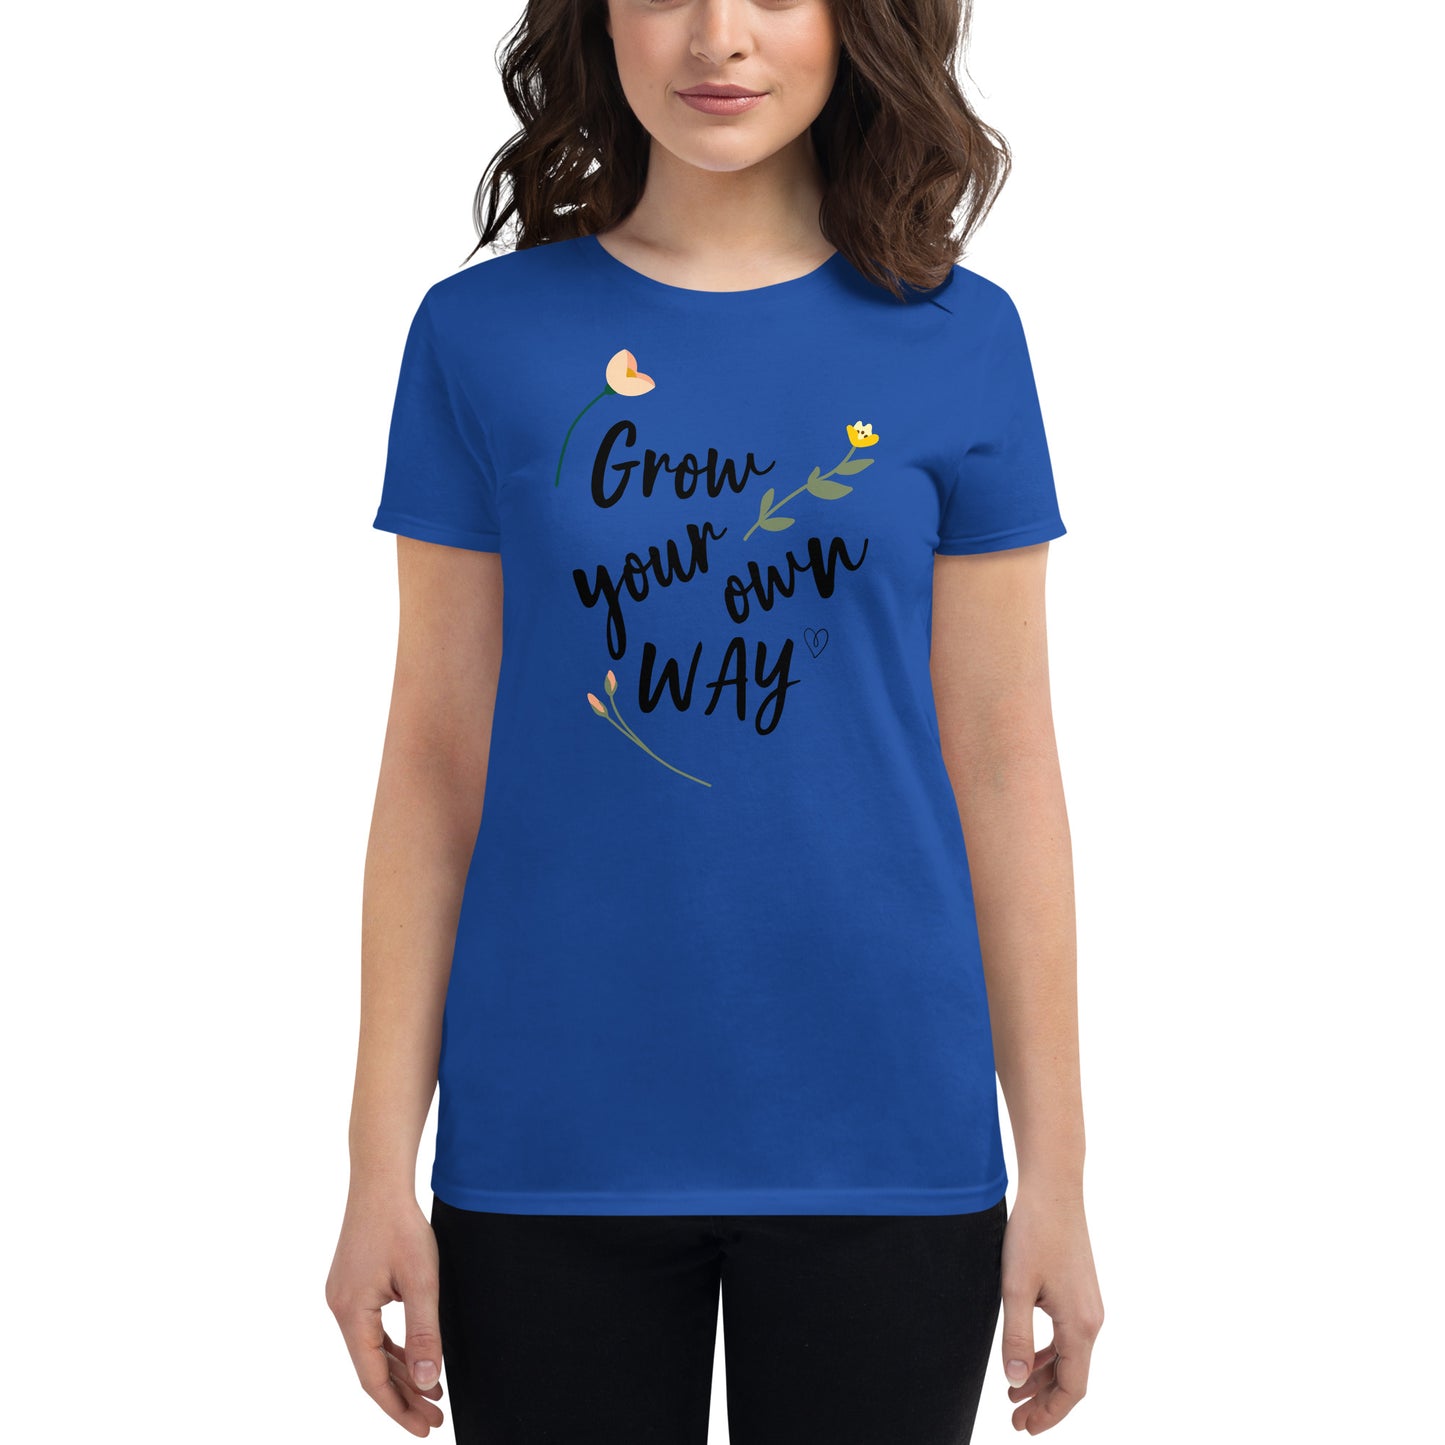 Women's Grow Your Own Way t-shirt